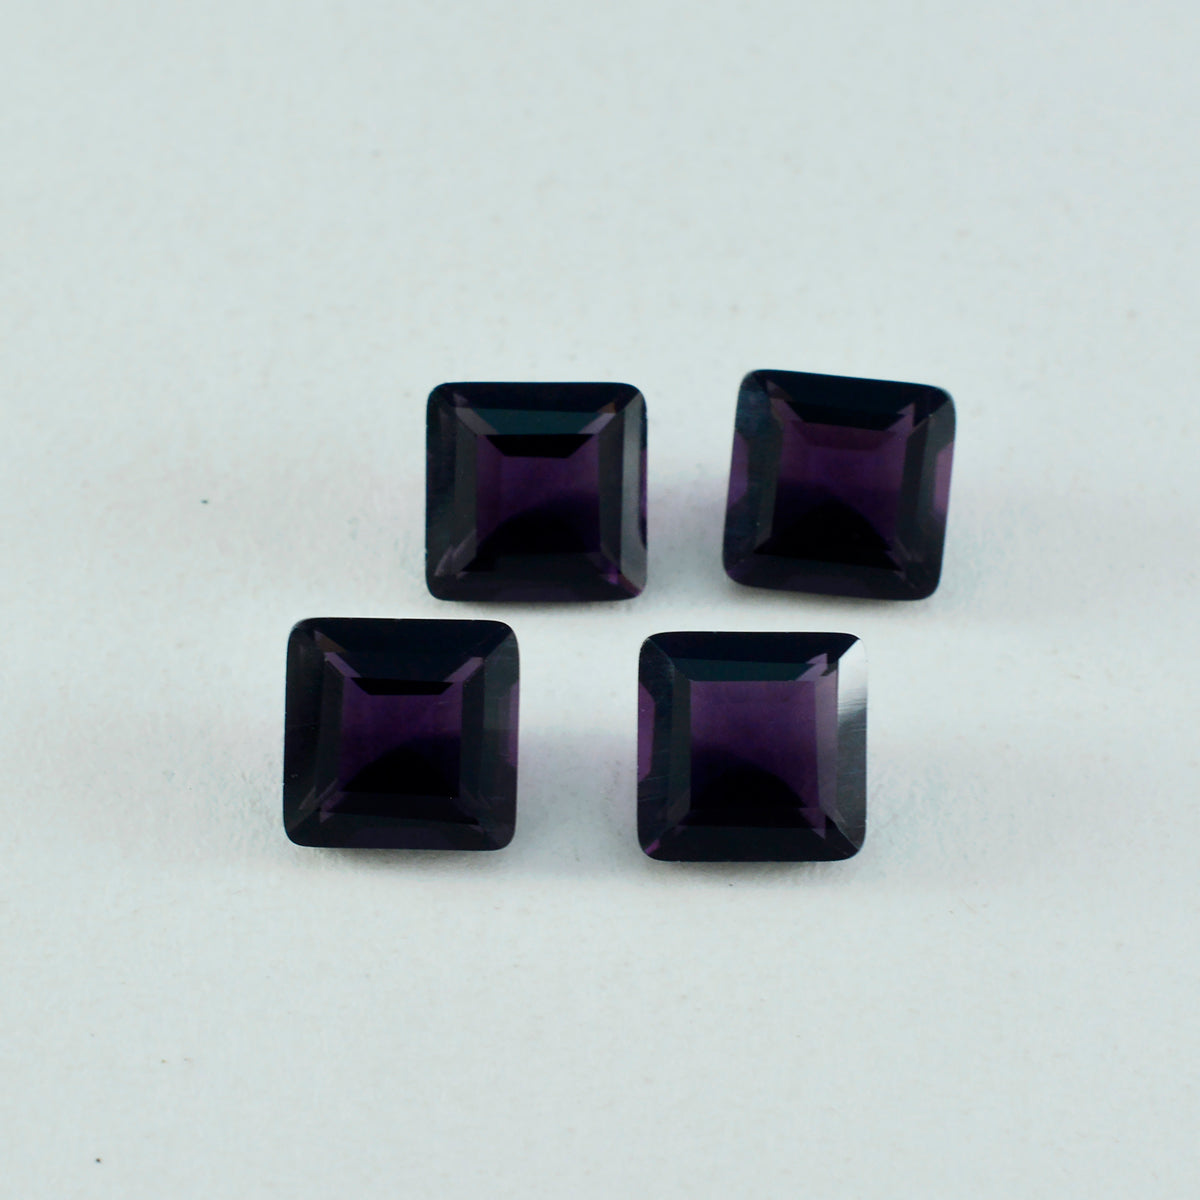 riyogems 1шт фиолетовый аметист cz ограненный 13х13 мм квадратной формы качественный драгоценный камень